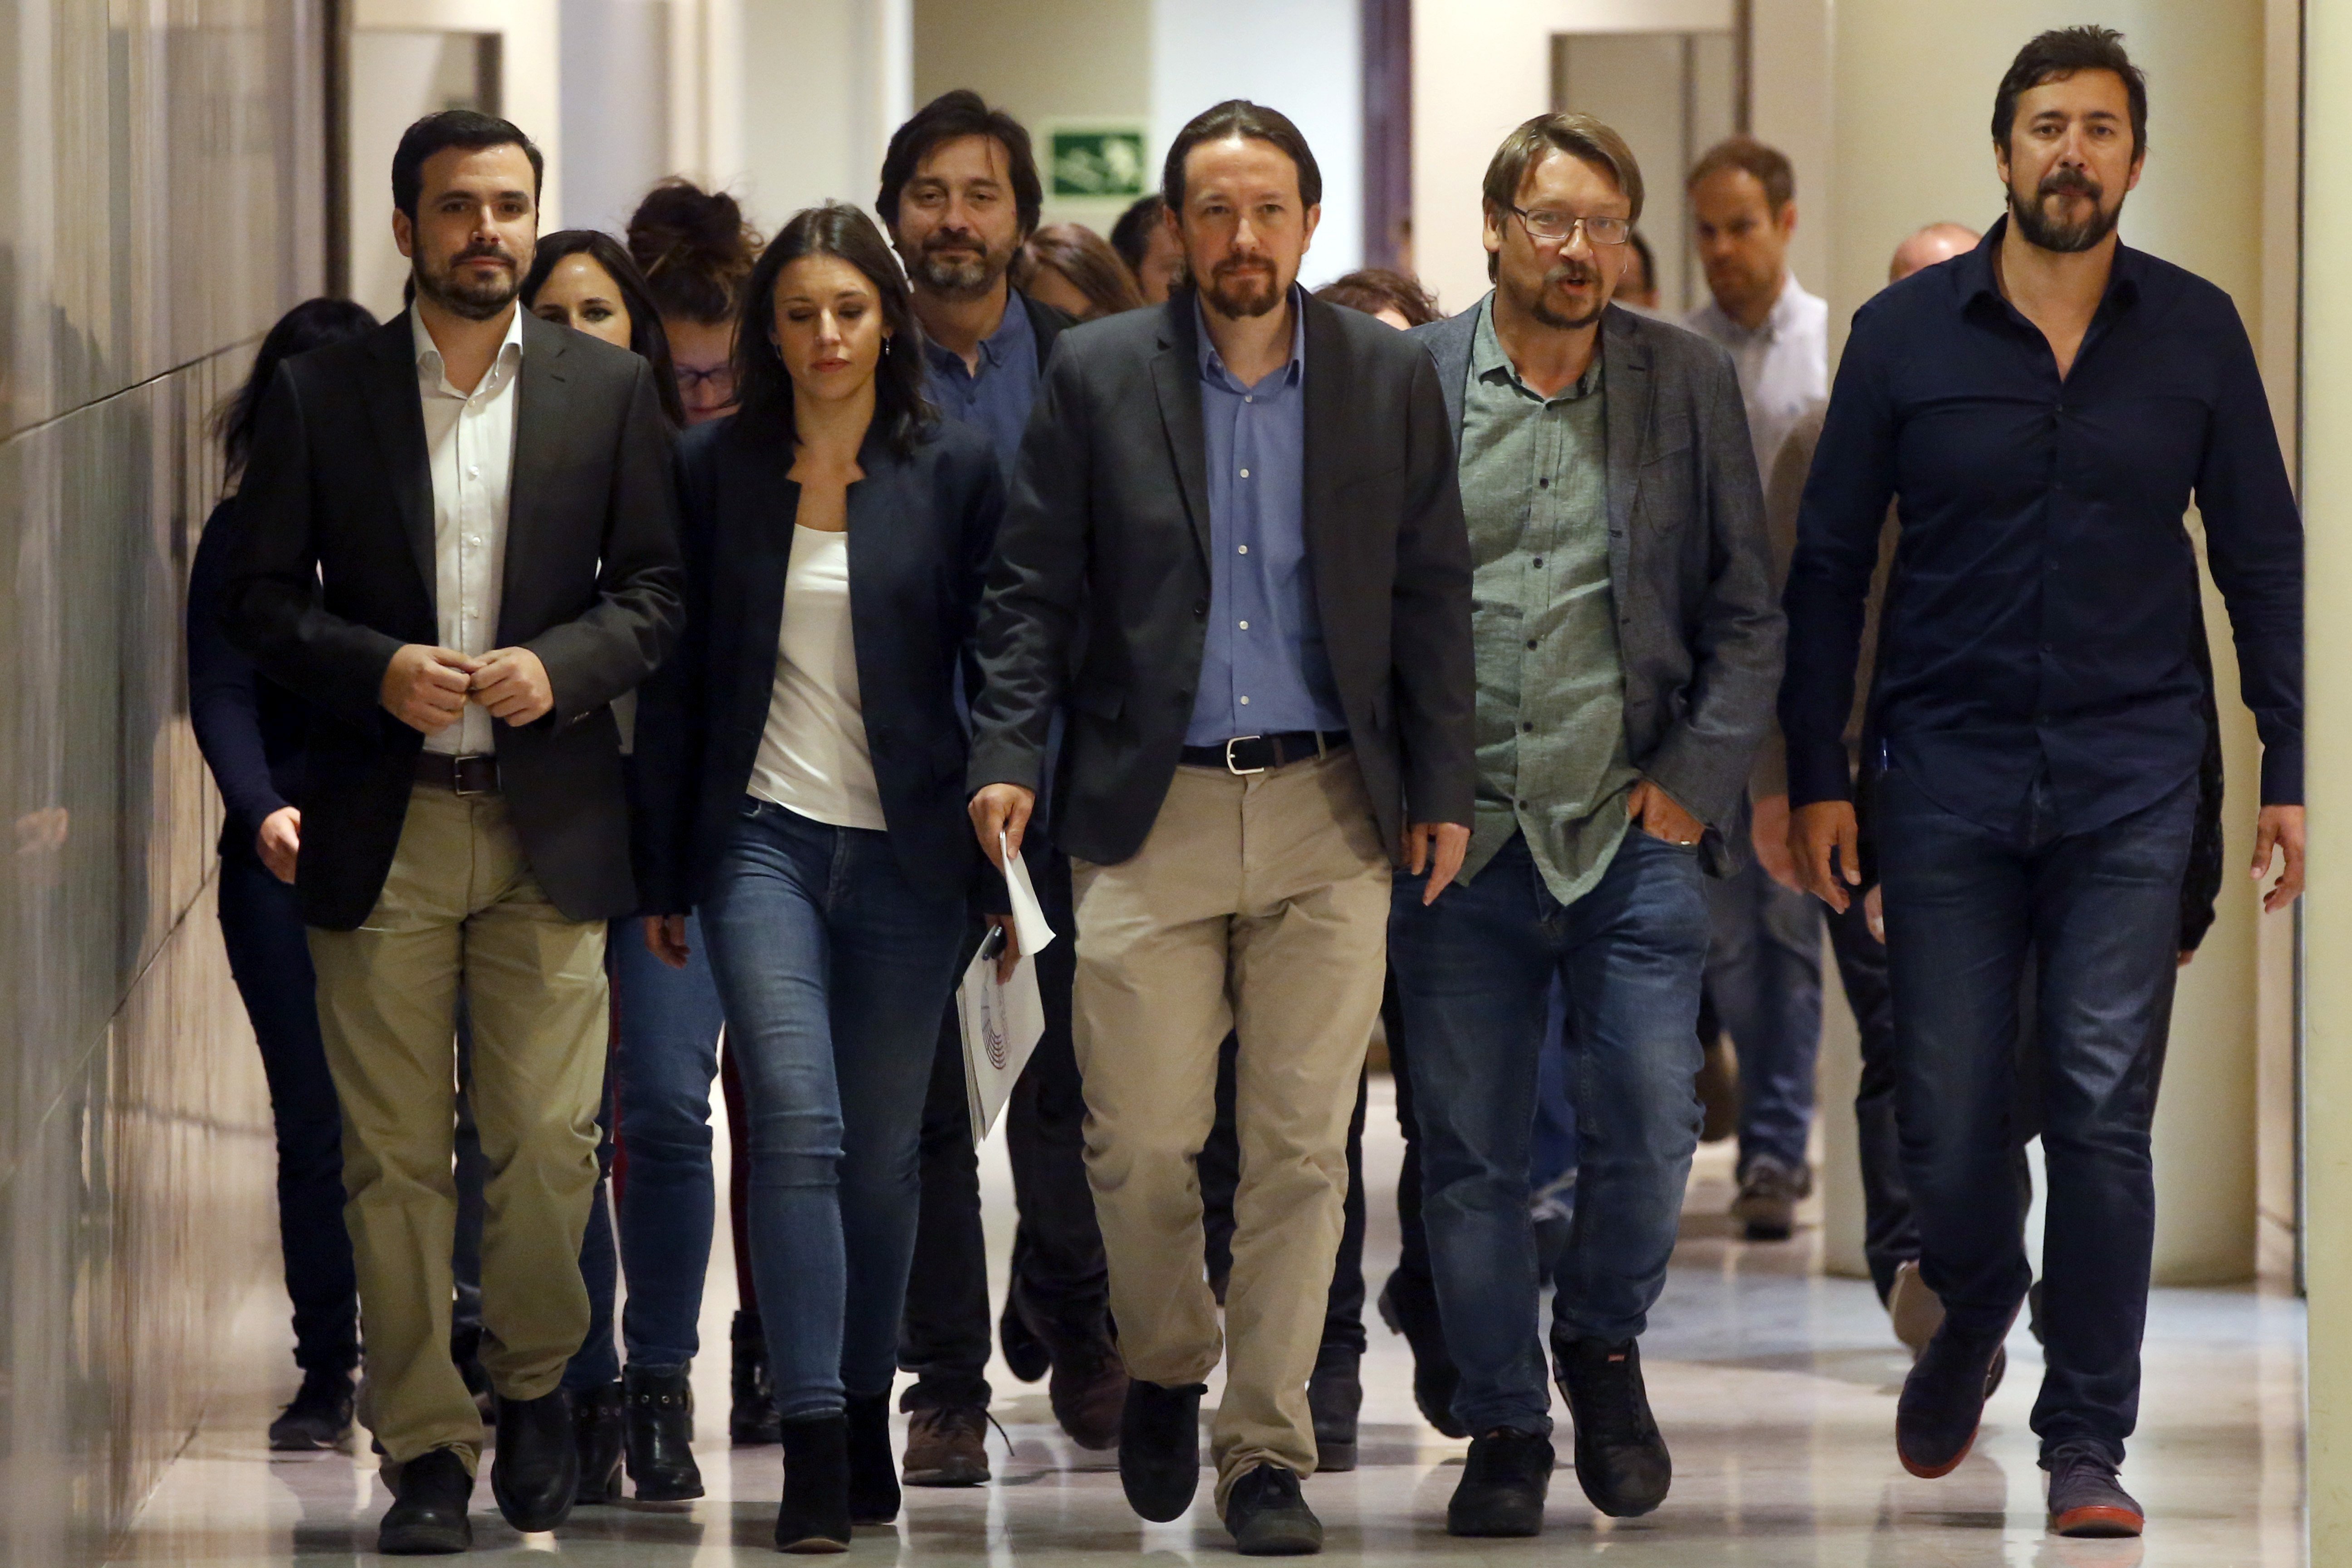 Les bases de Podemos aproven la censura a Rajoy amb una baixa participació